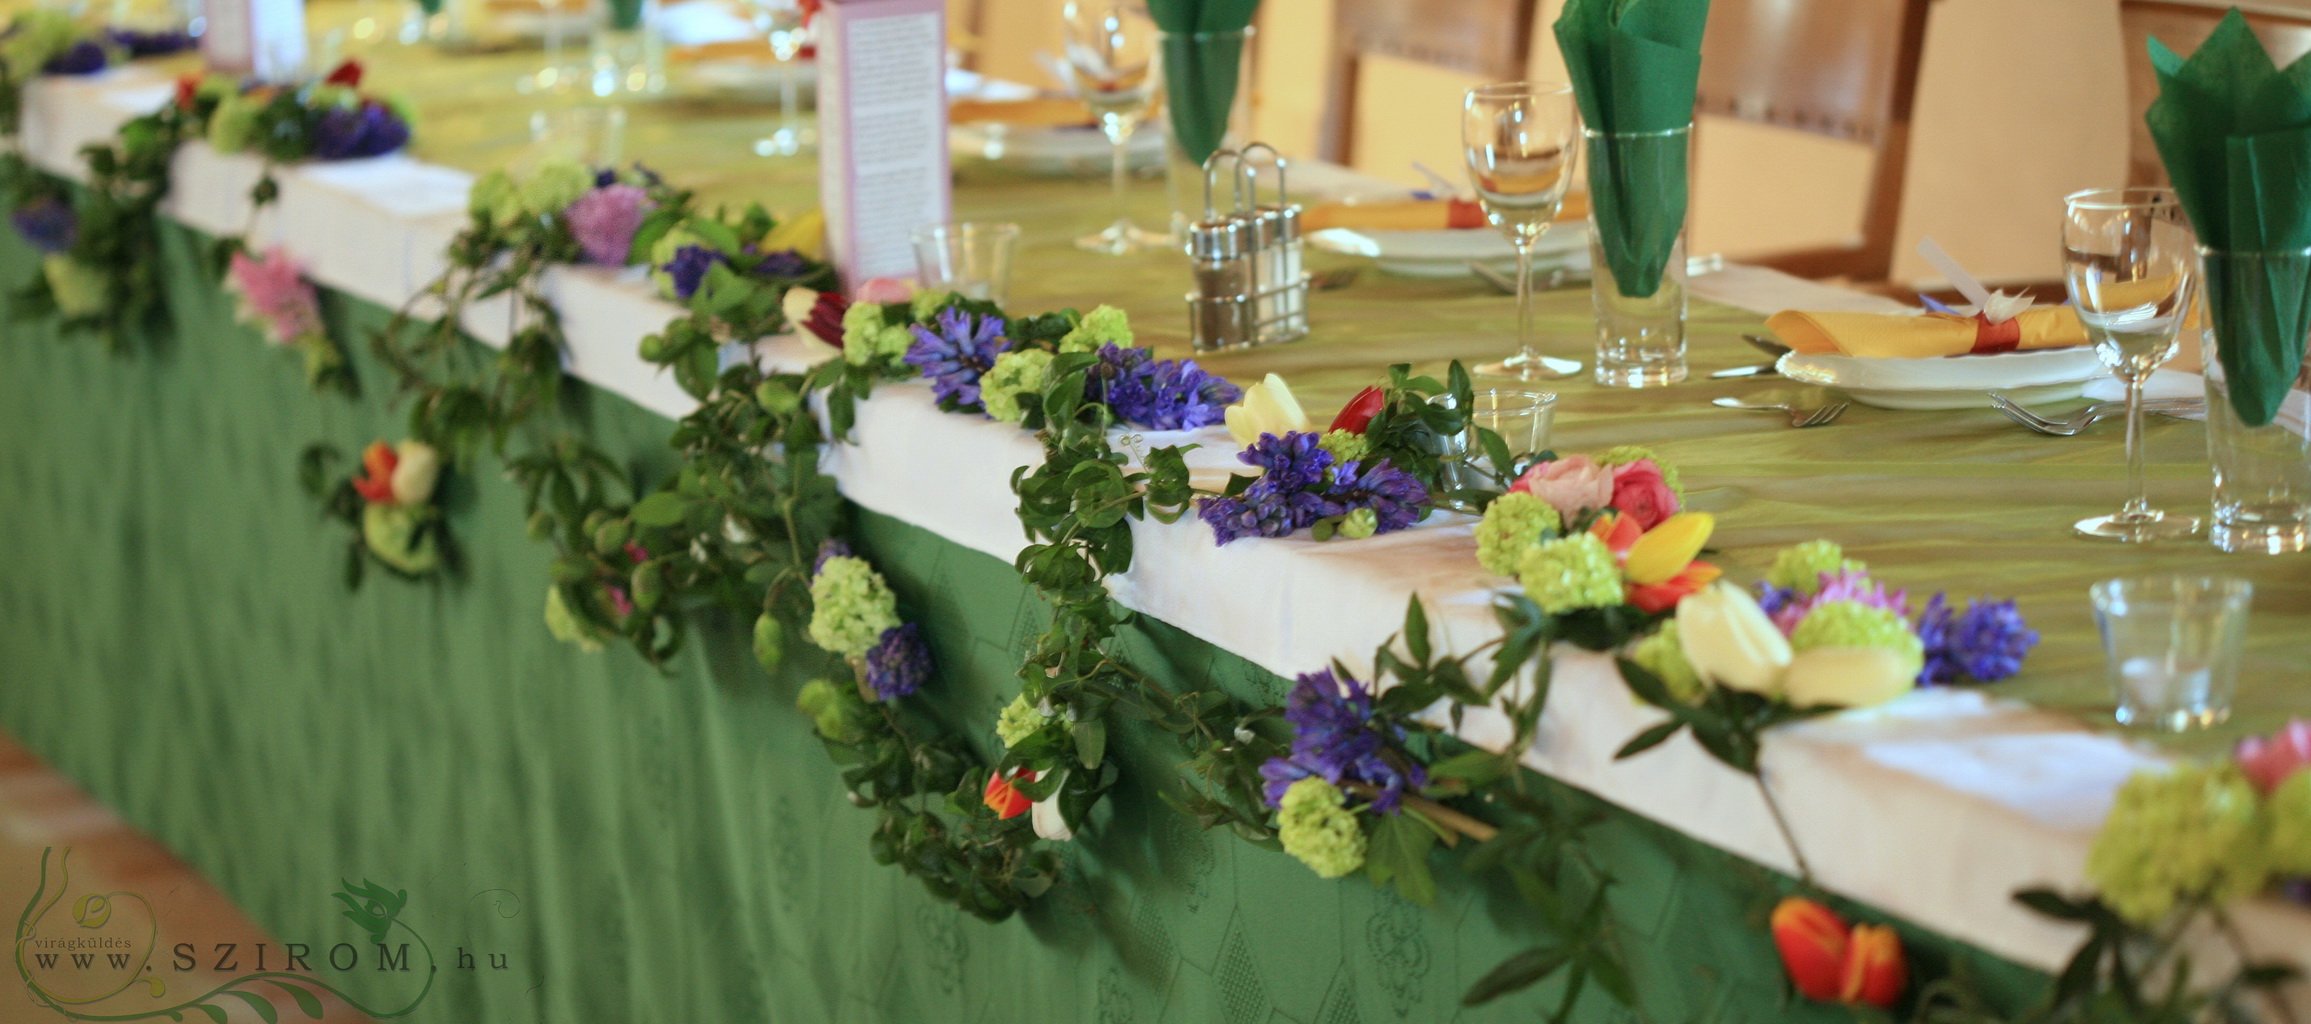 Blumenlieferung nach Budapest - Tischdekoration